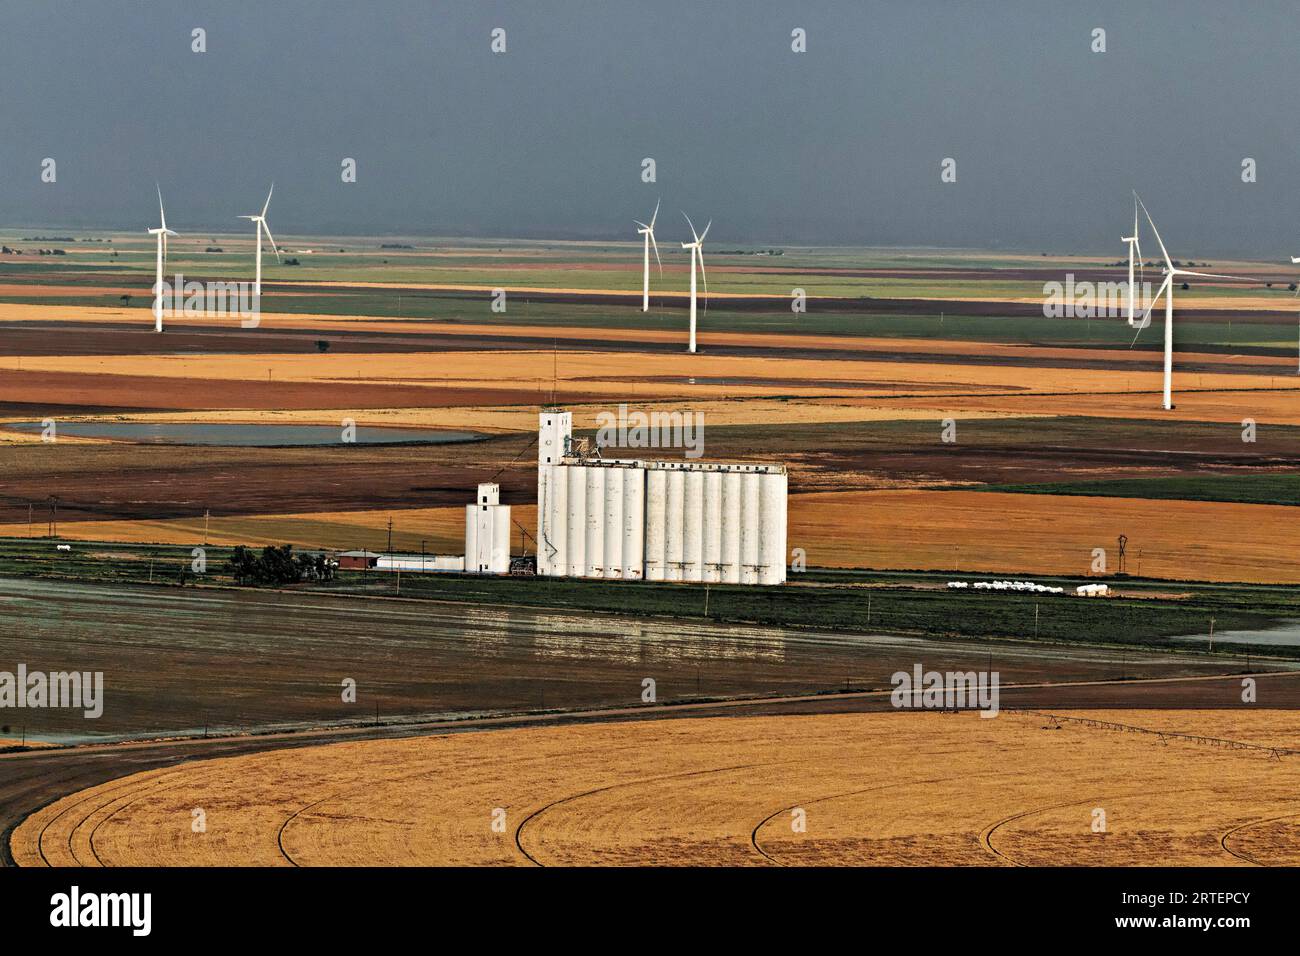 Windturbinen in Kansas bilden die Kulisse für den Getreideaufzug auf landwirtschaftlichen Feldern. Windstrom versorgt den Staat mit fast der Hälfte seines Stroms Stockfoto